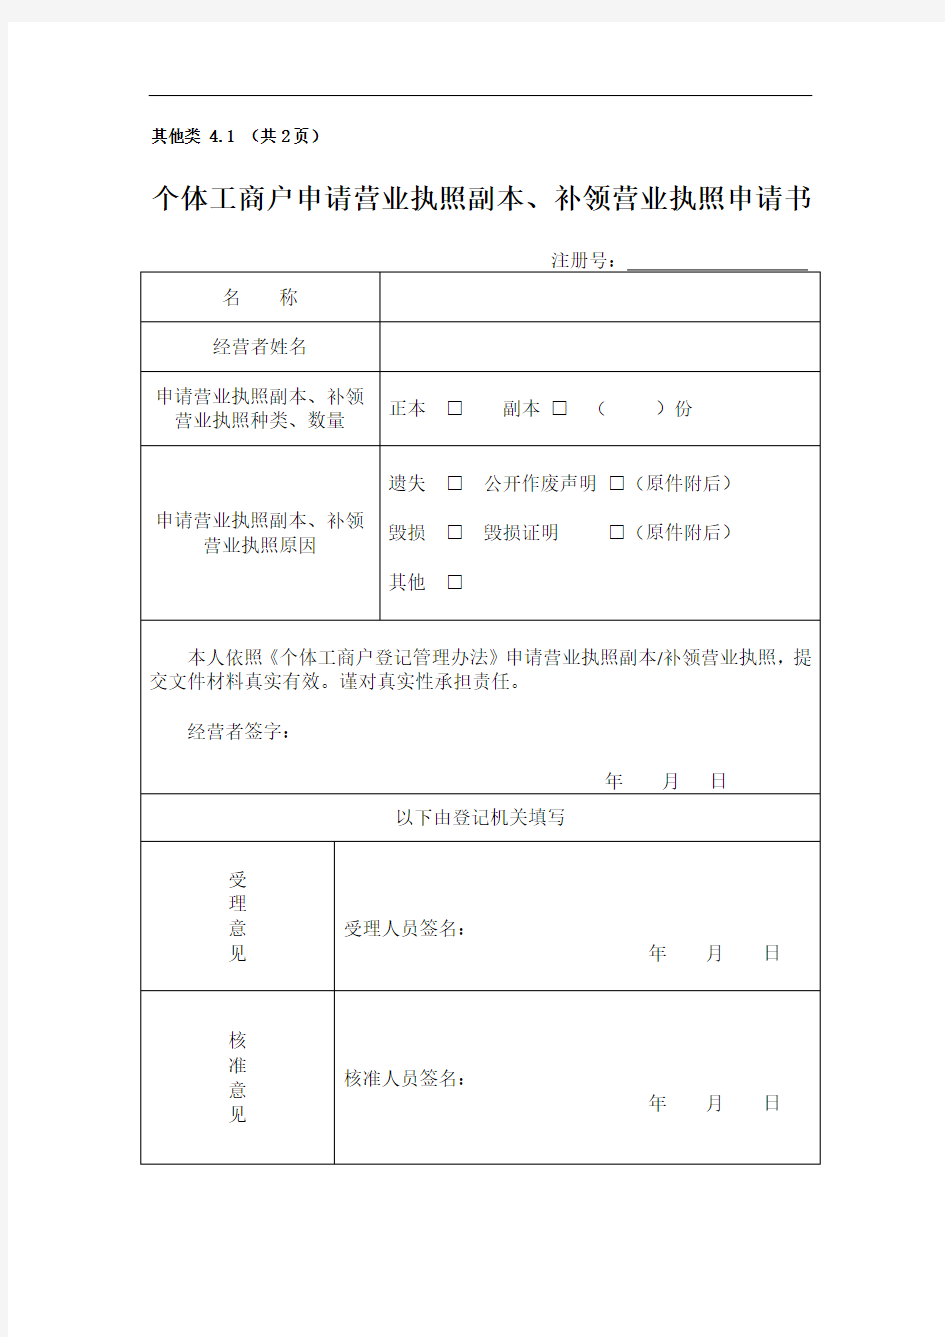 杭州市场监督管理局固定格式文件之个体工商户申请营业执照副本补领营业执照申请书